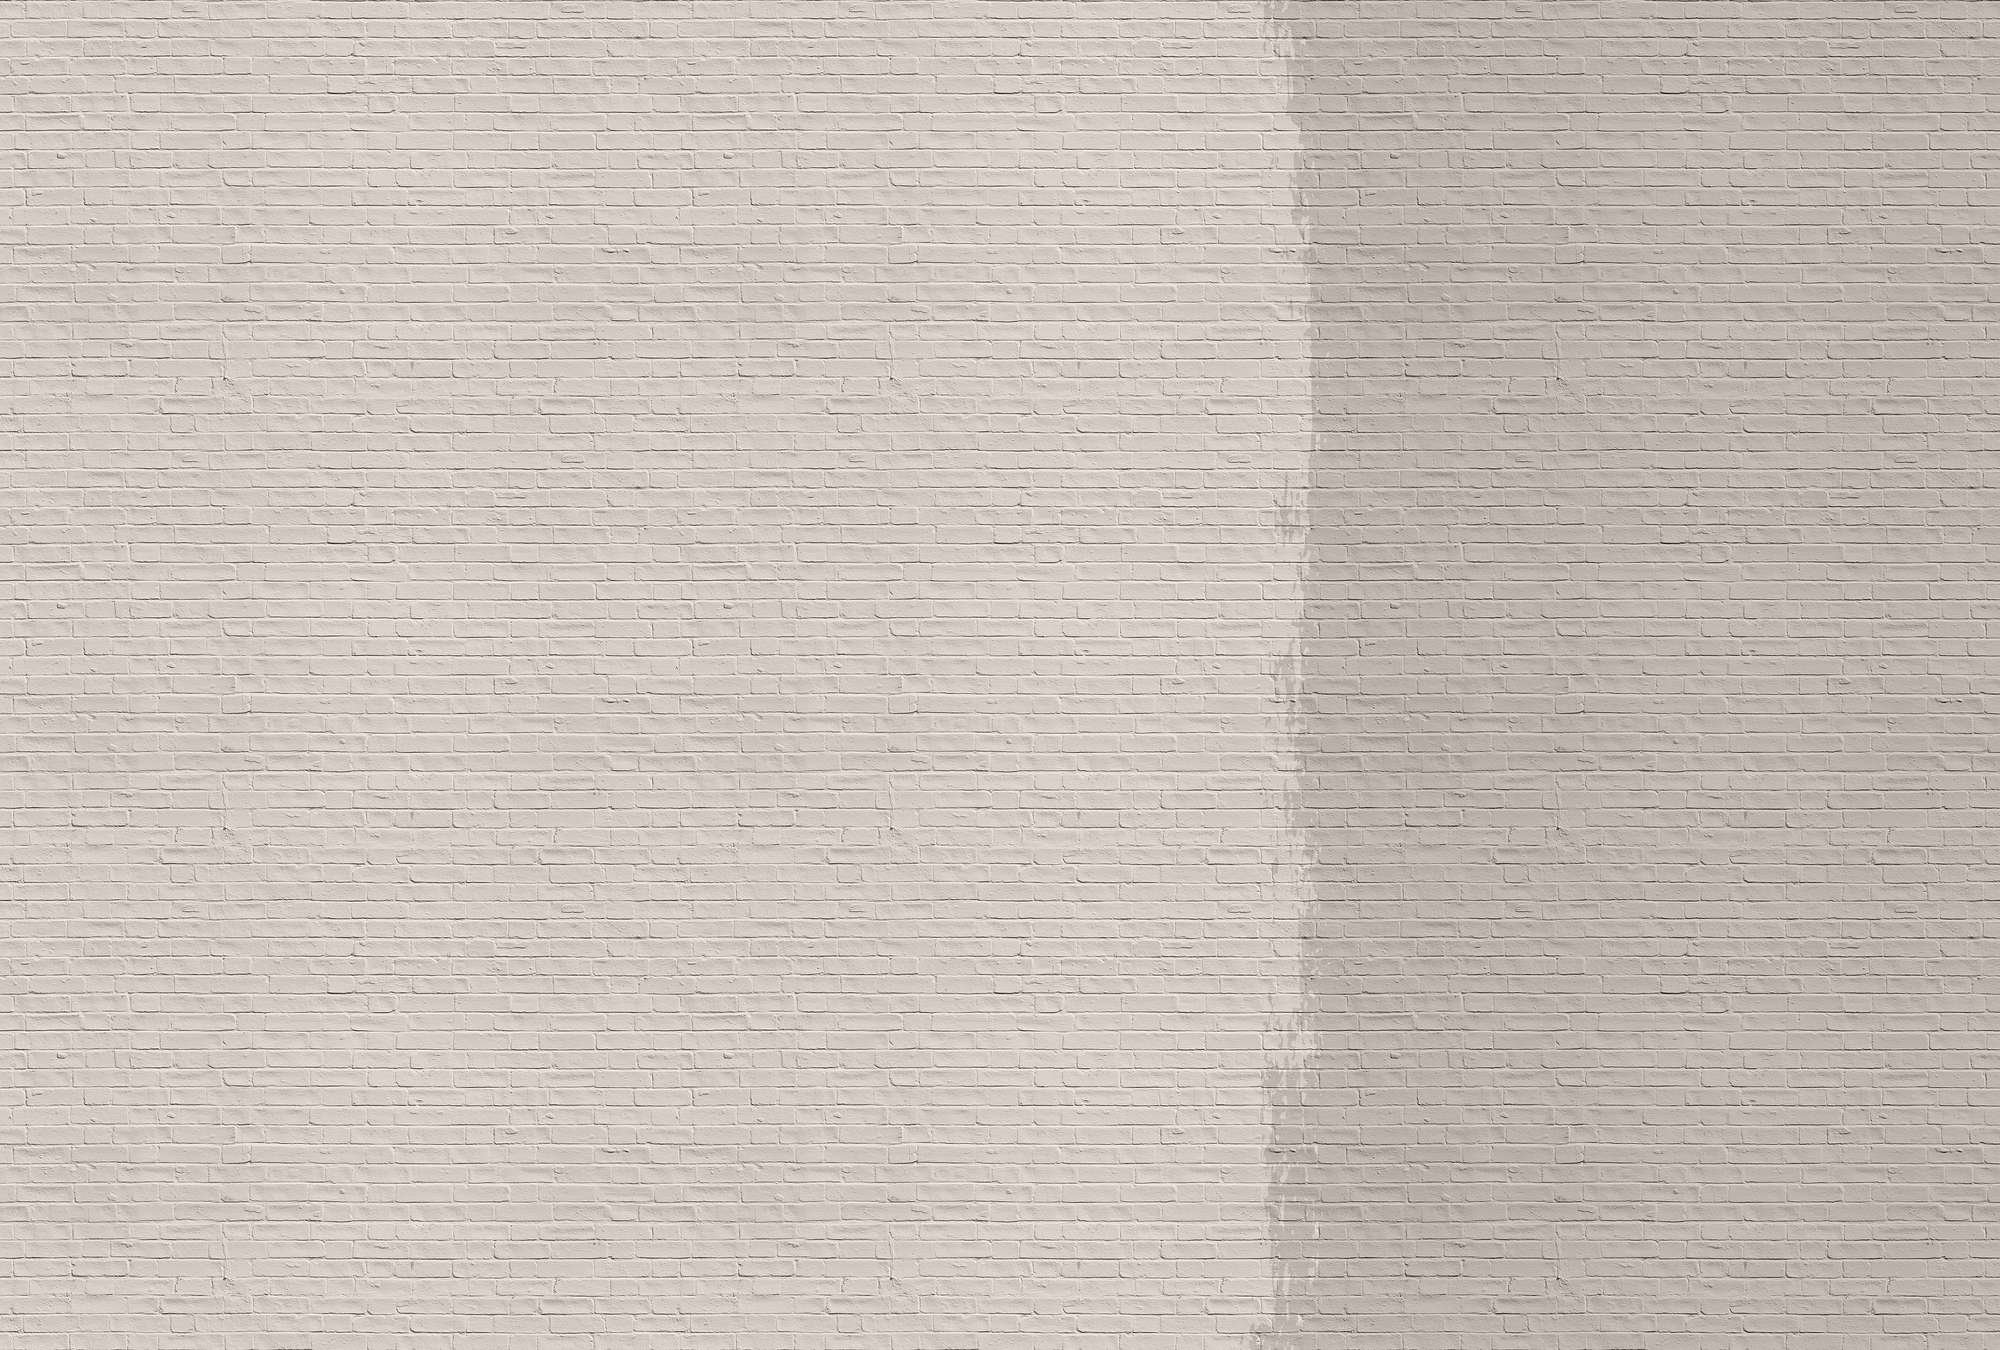             Tainted love 1 - Papier peint mur de briques peint - beige, taupe | nacré intissé lisse
        